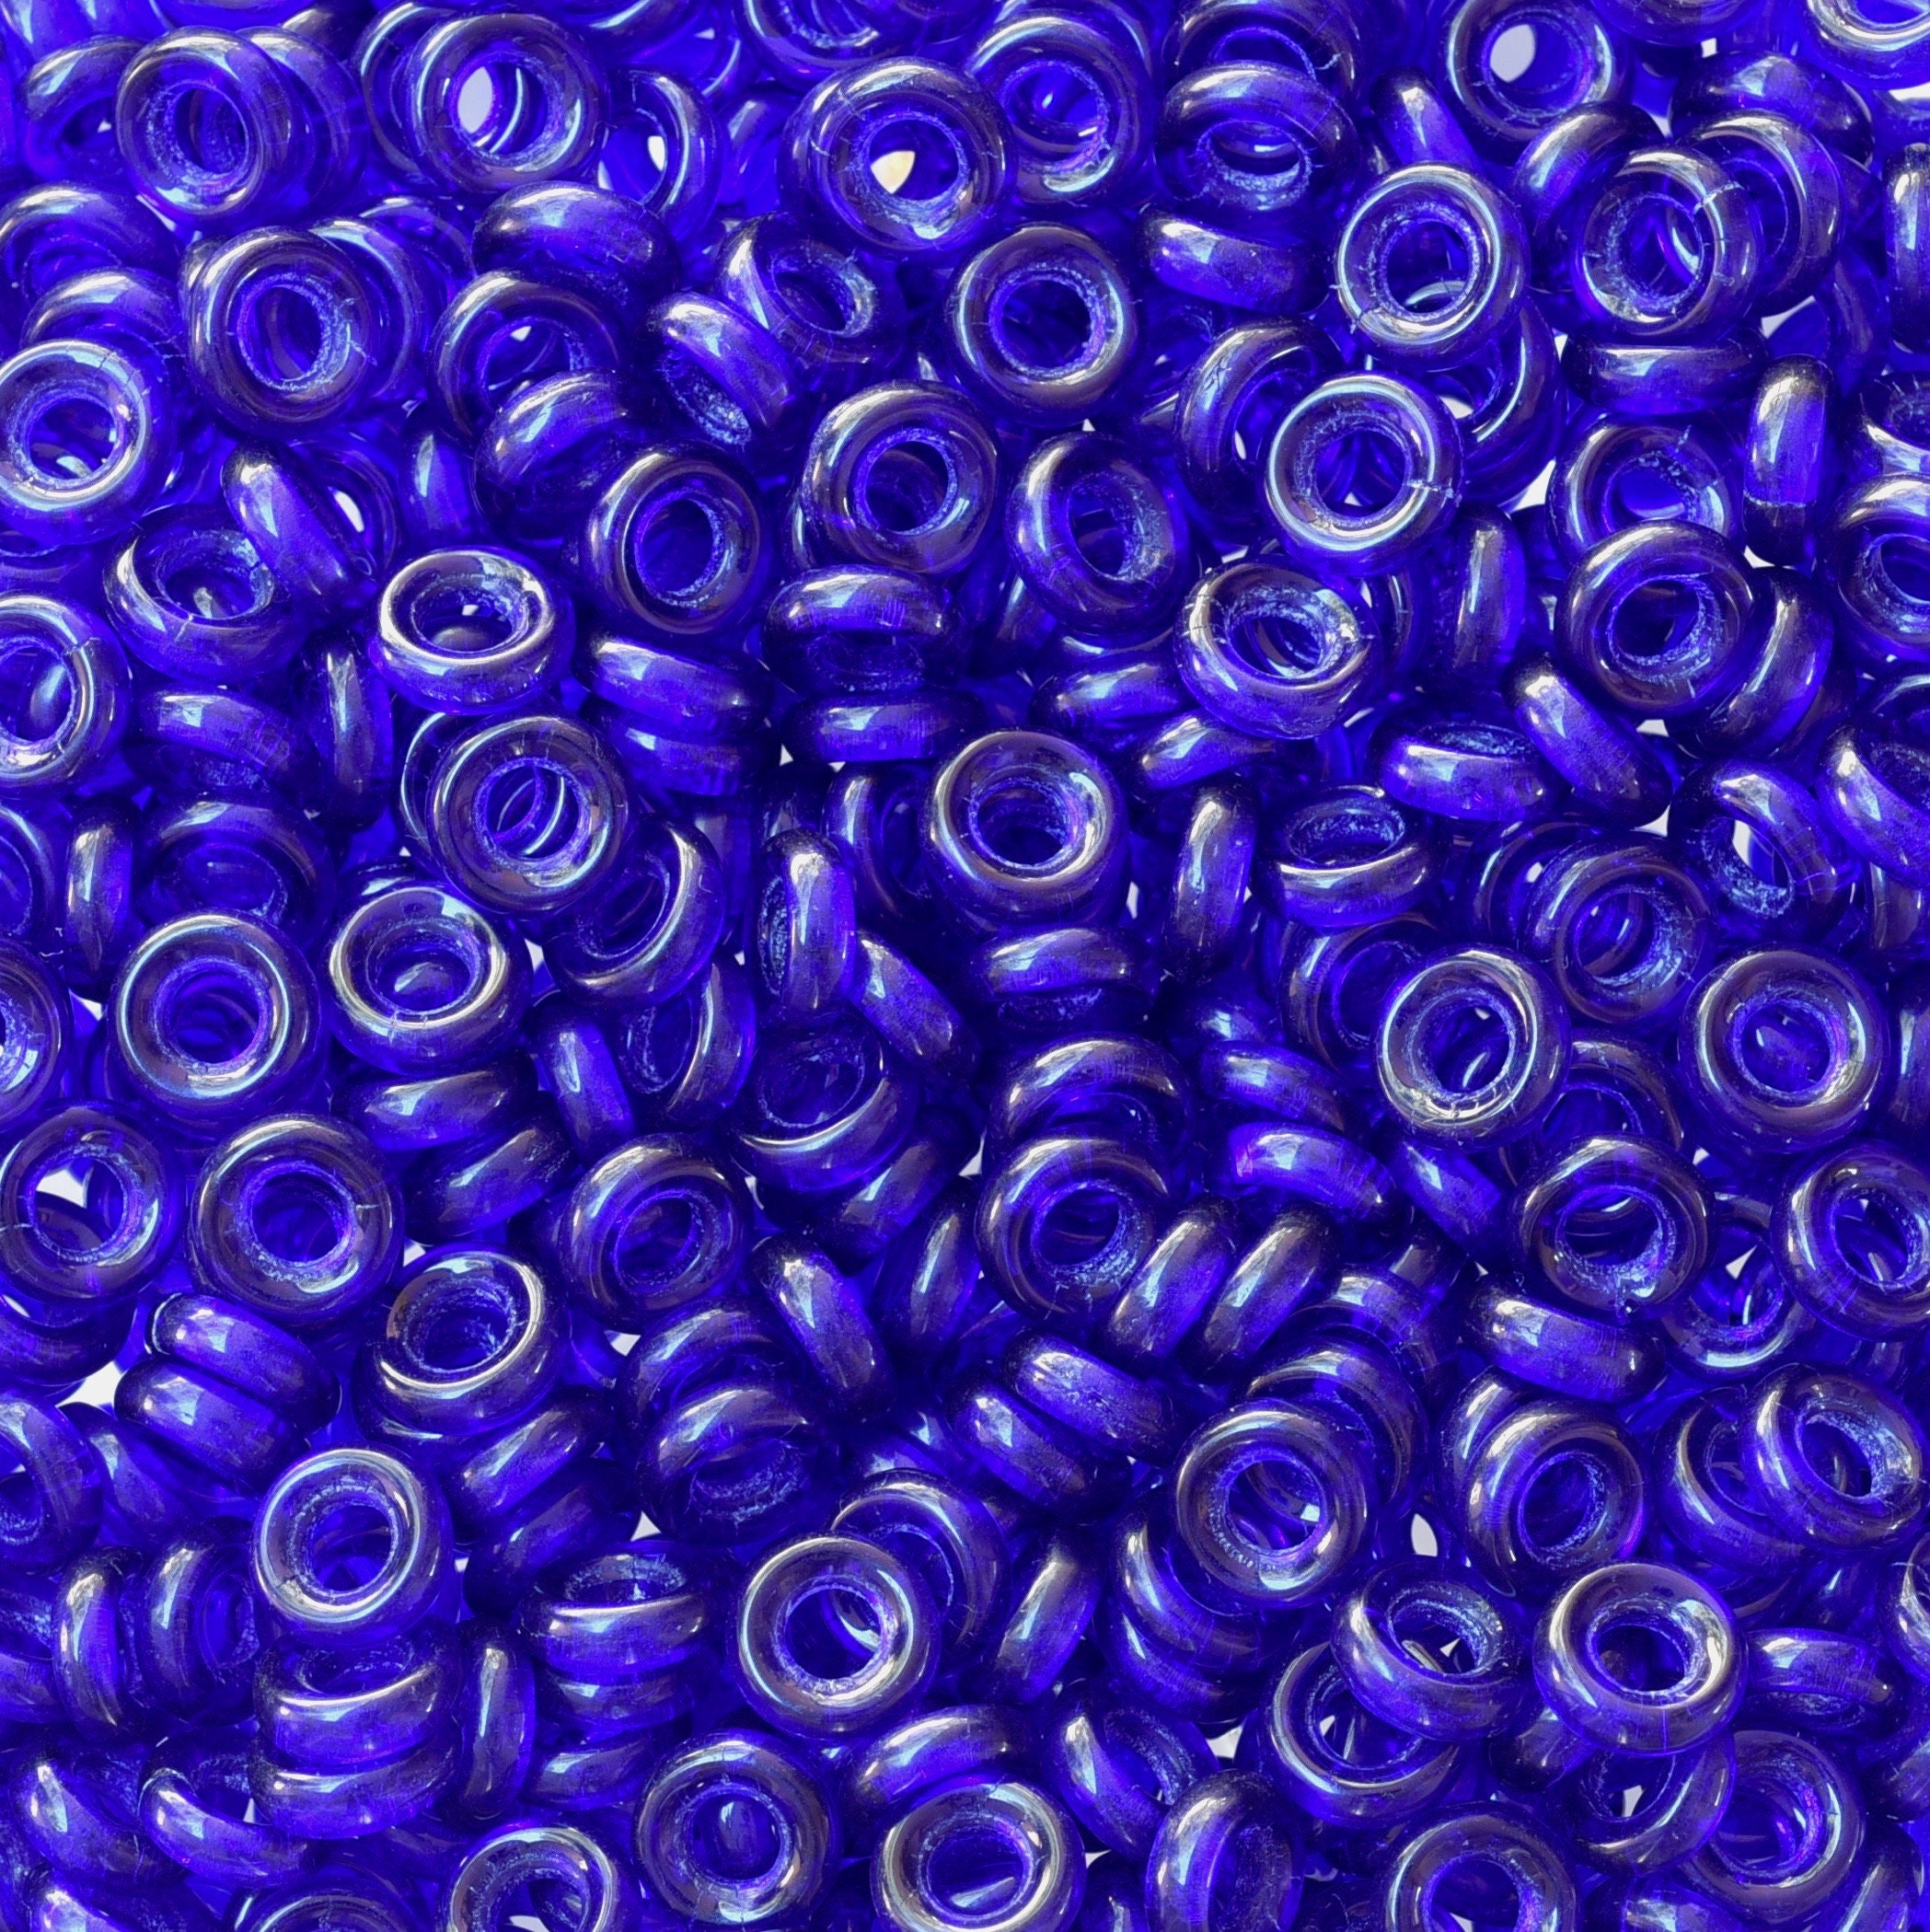 Matte Montana Blue AB Czech Glass Beads, 9x6mm Teardrop - Golden Age Beads